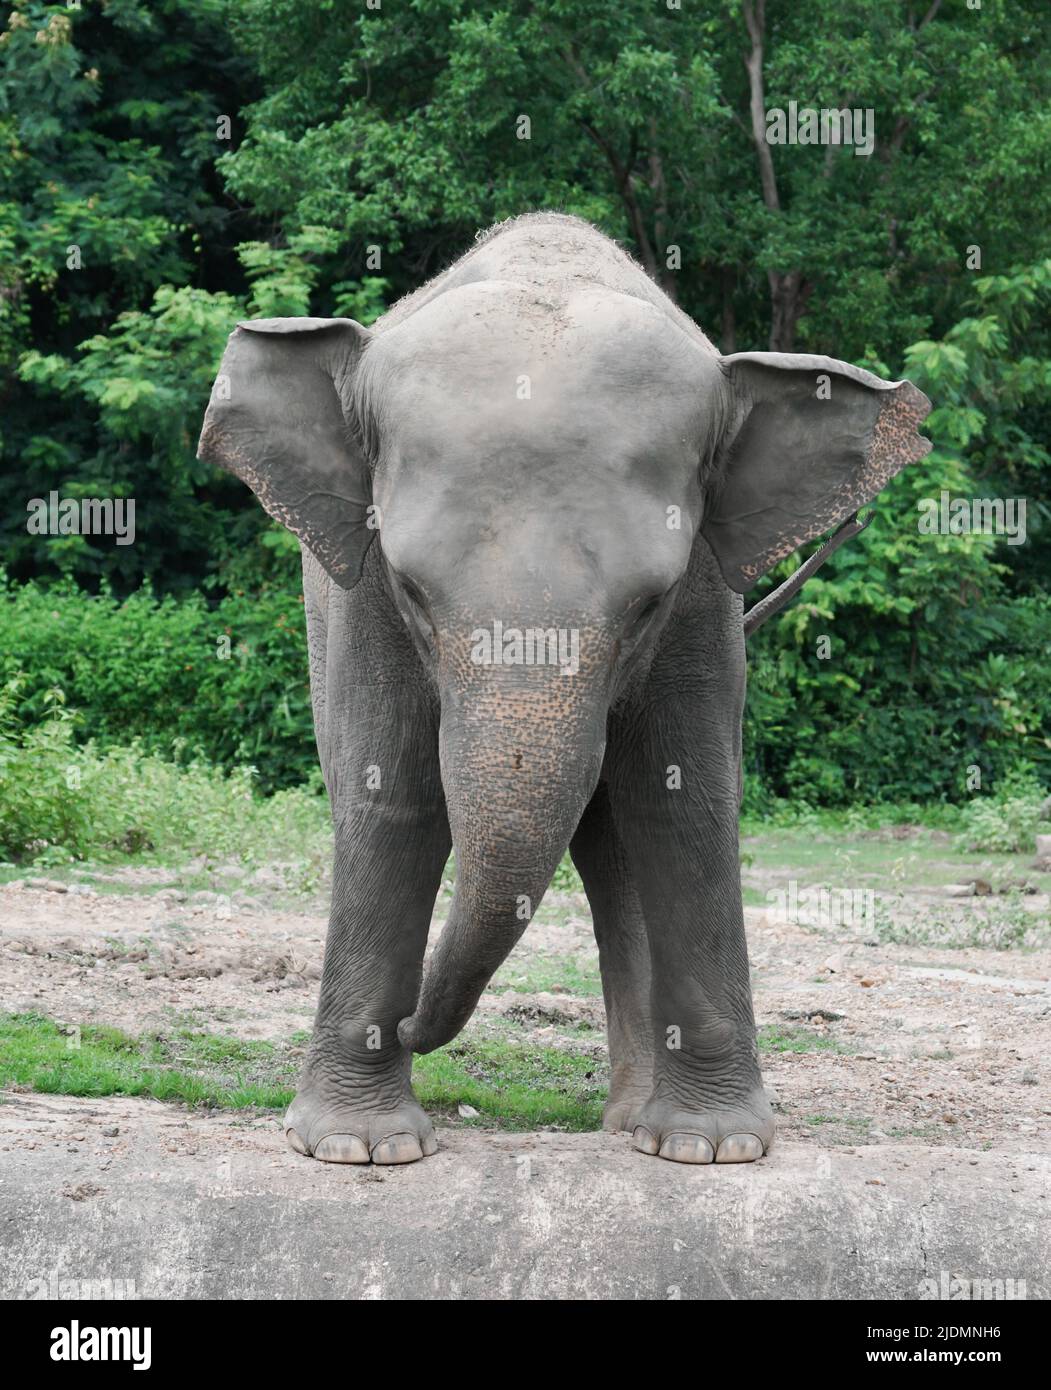 divertido elefante asiático joven en el zoológico Foto de stock